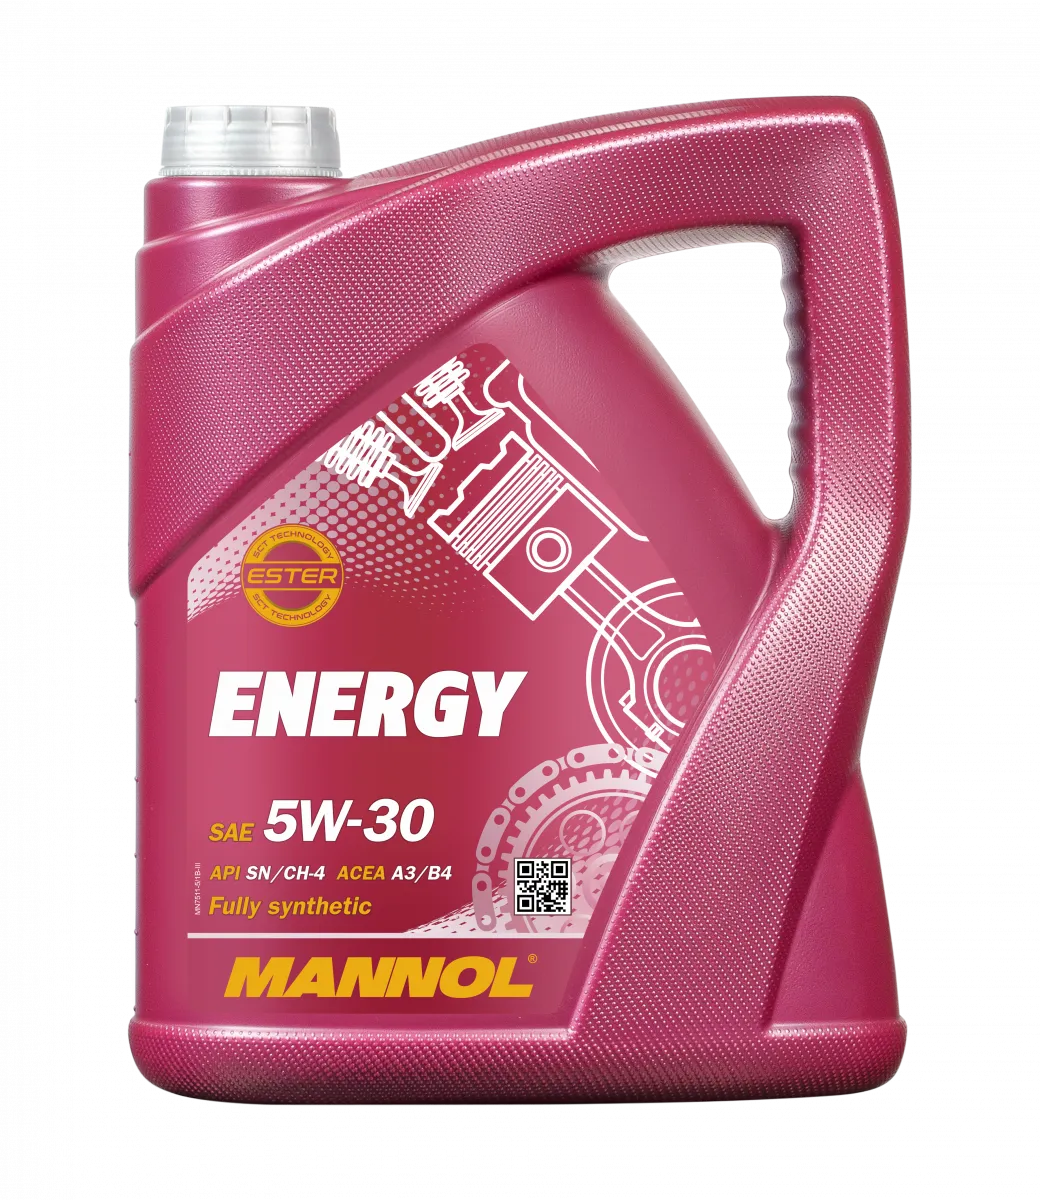 mannol energy 5W-30#1